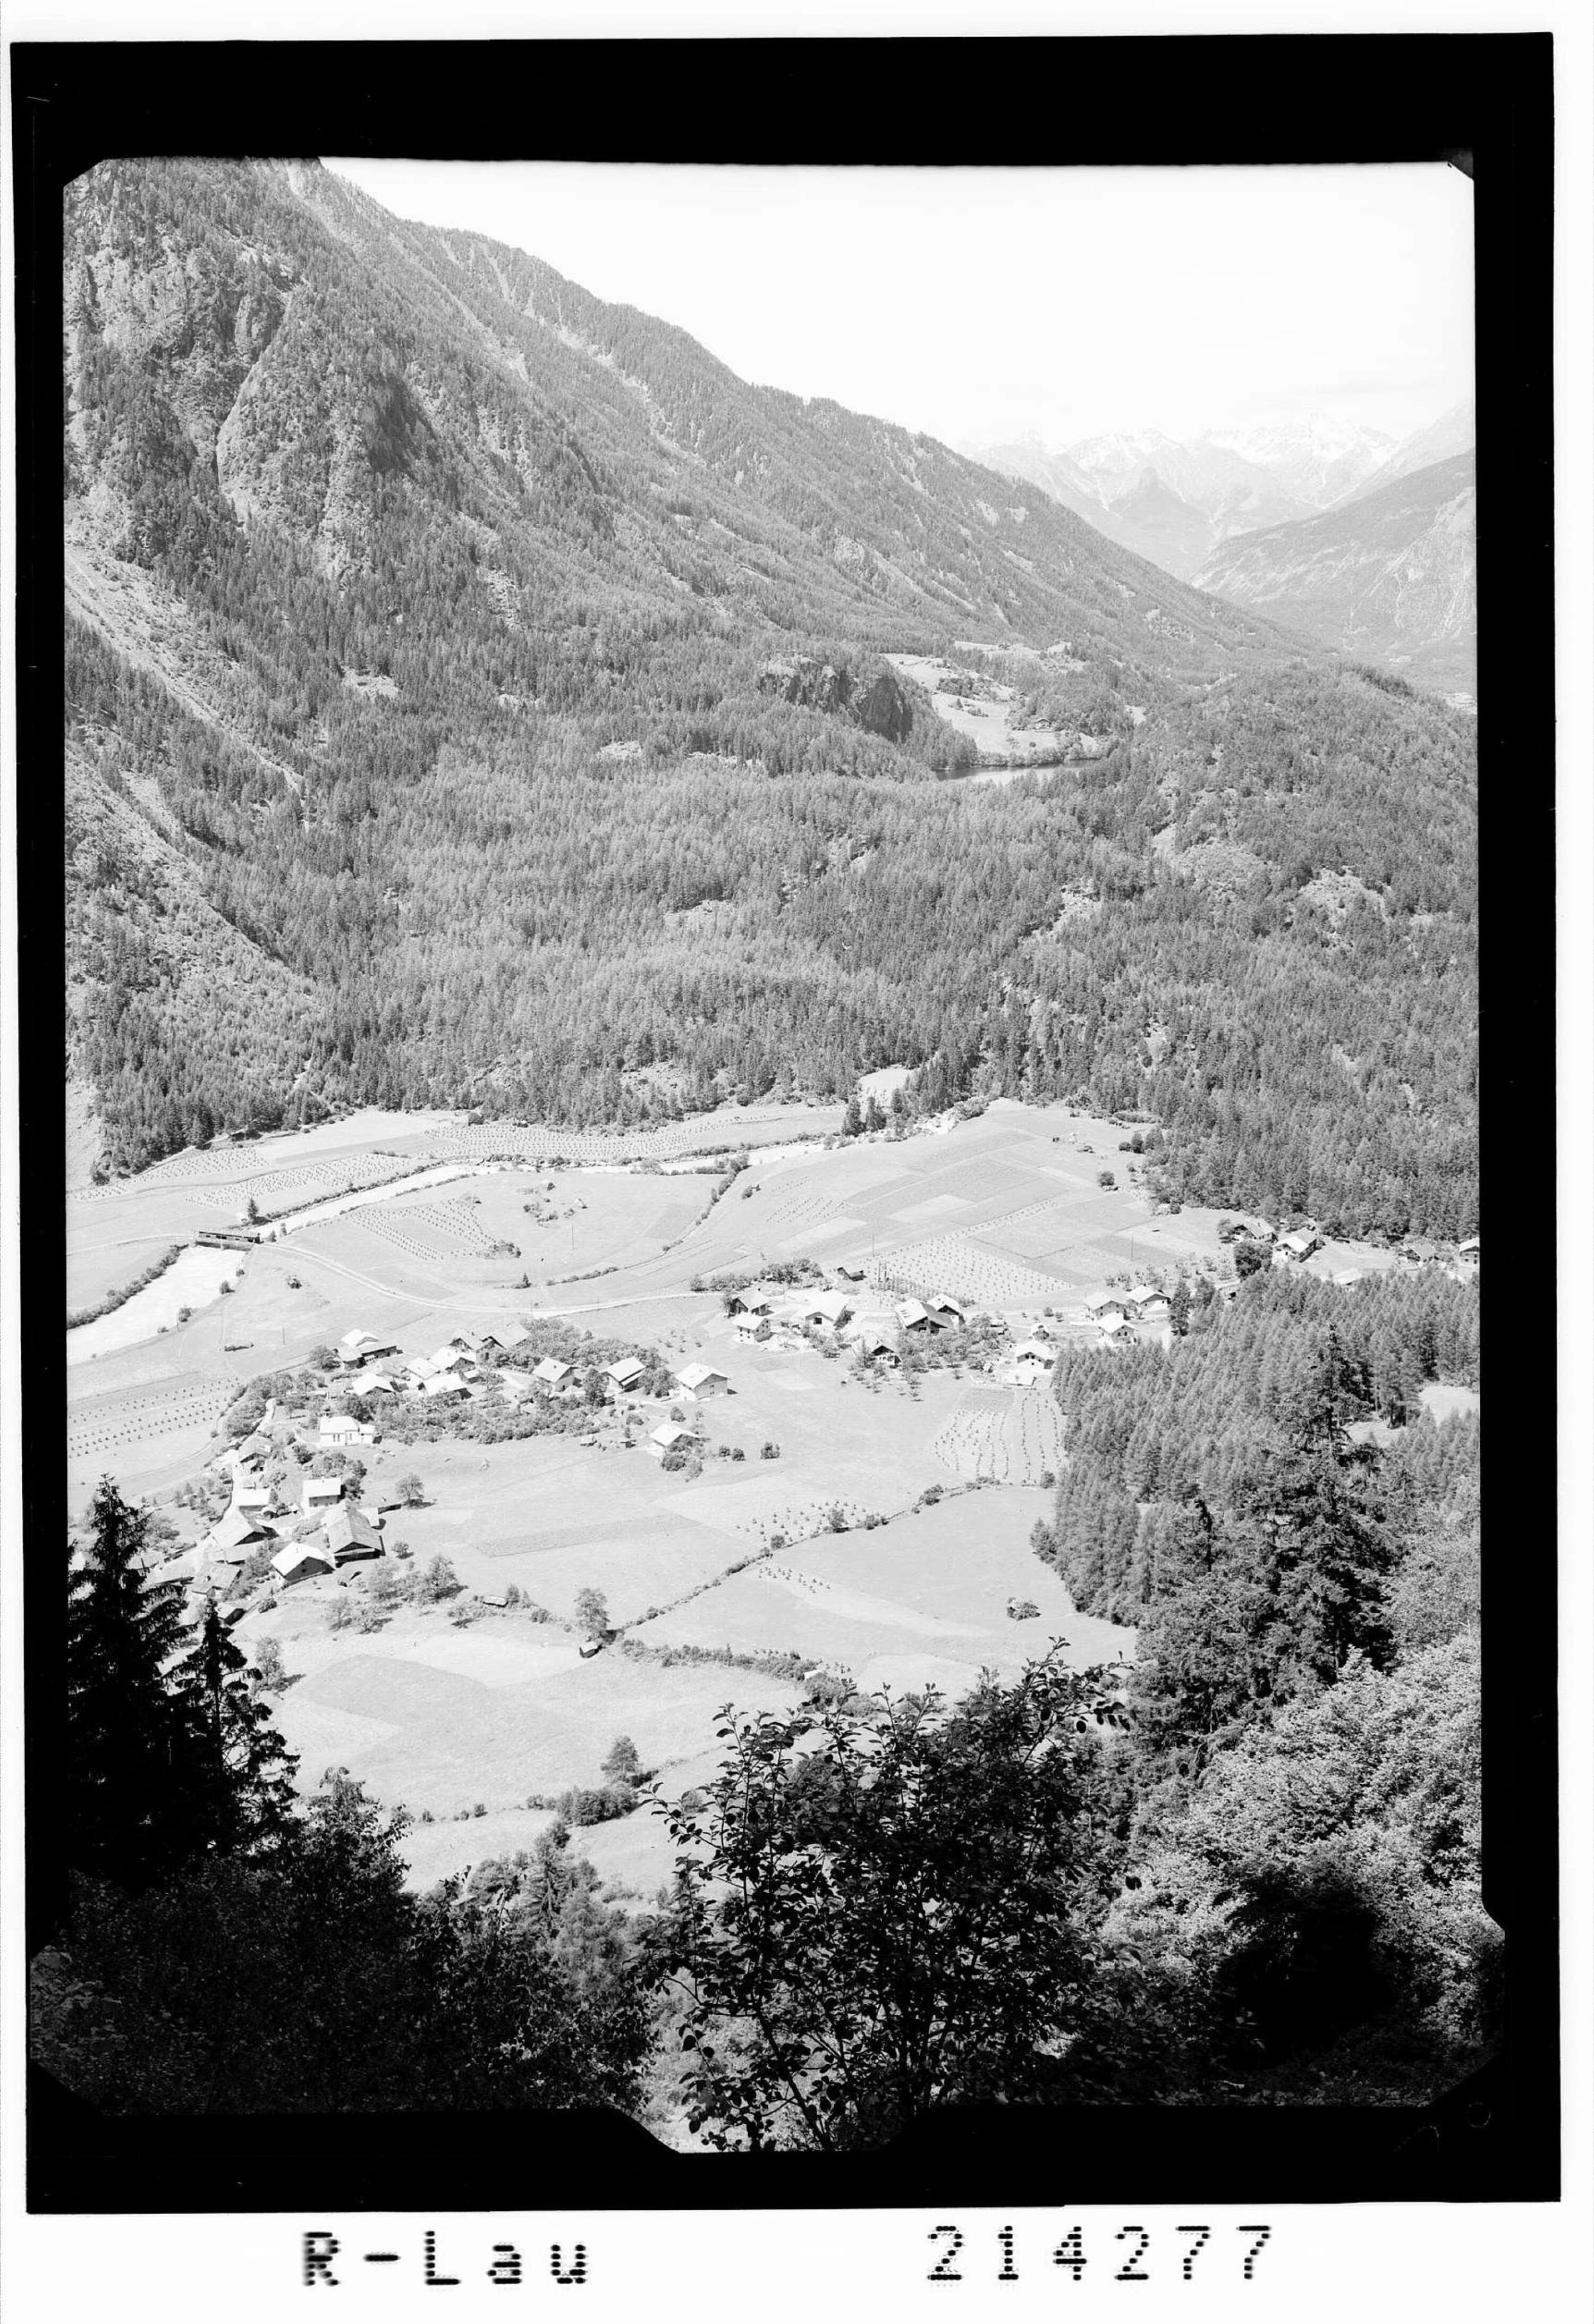 Habichen im Ötztal / Tirol mit Piburger See und Lechtaler Alpen></div>


    <hr>
    <div class=